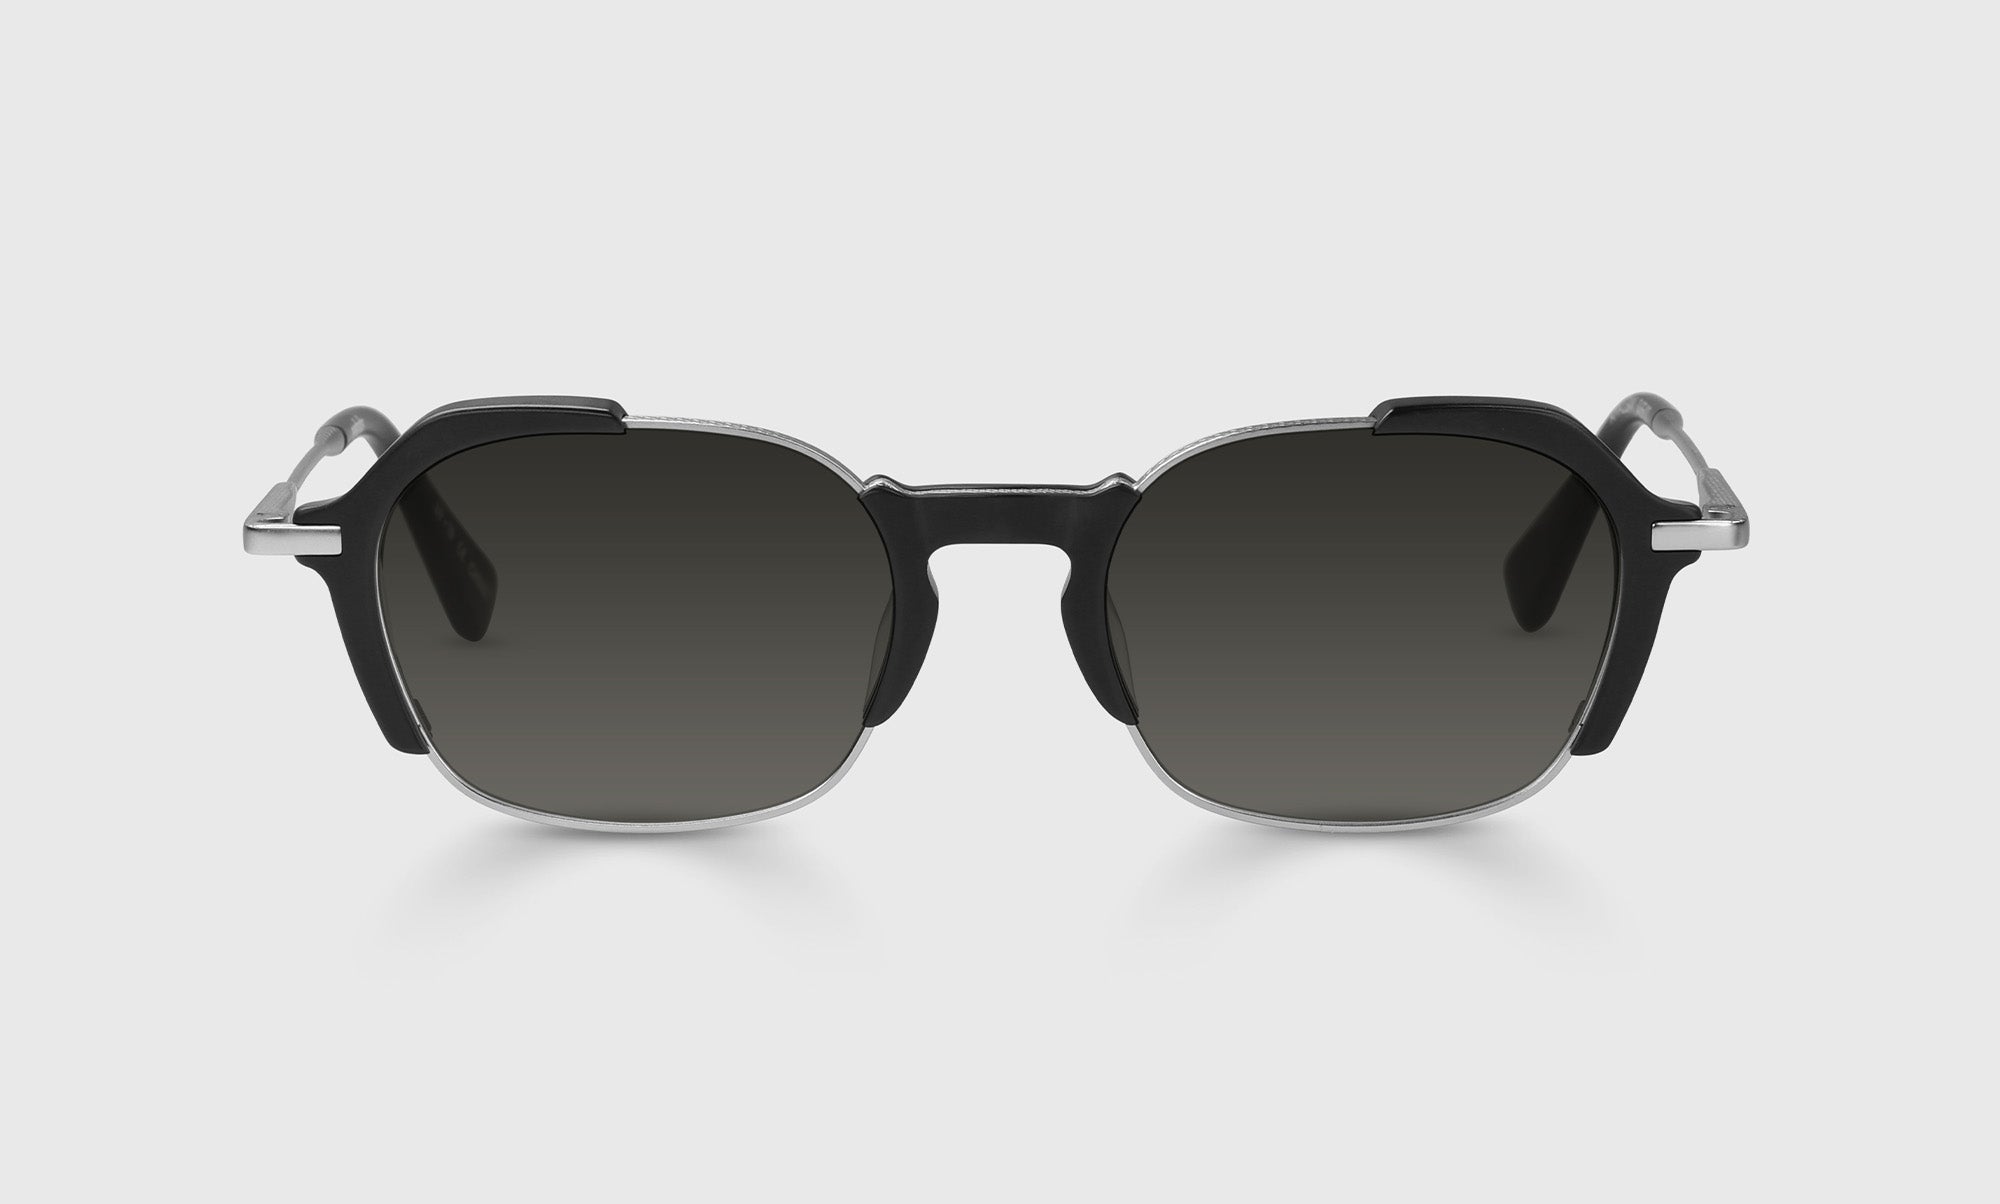 00-pg | eyebobs Amalgam, Wide, Square, Reader Sunglasses, Polarized Grey